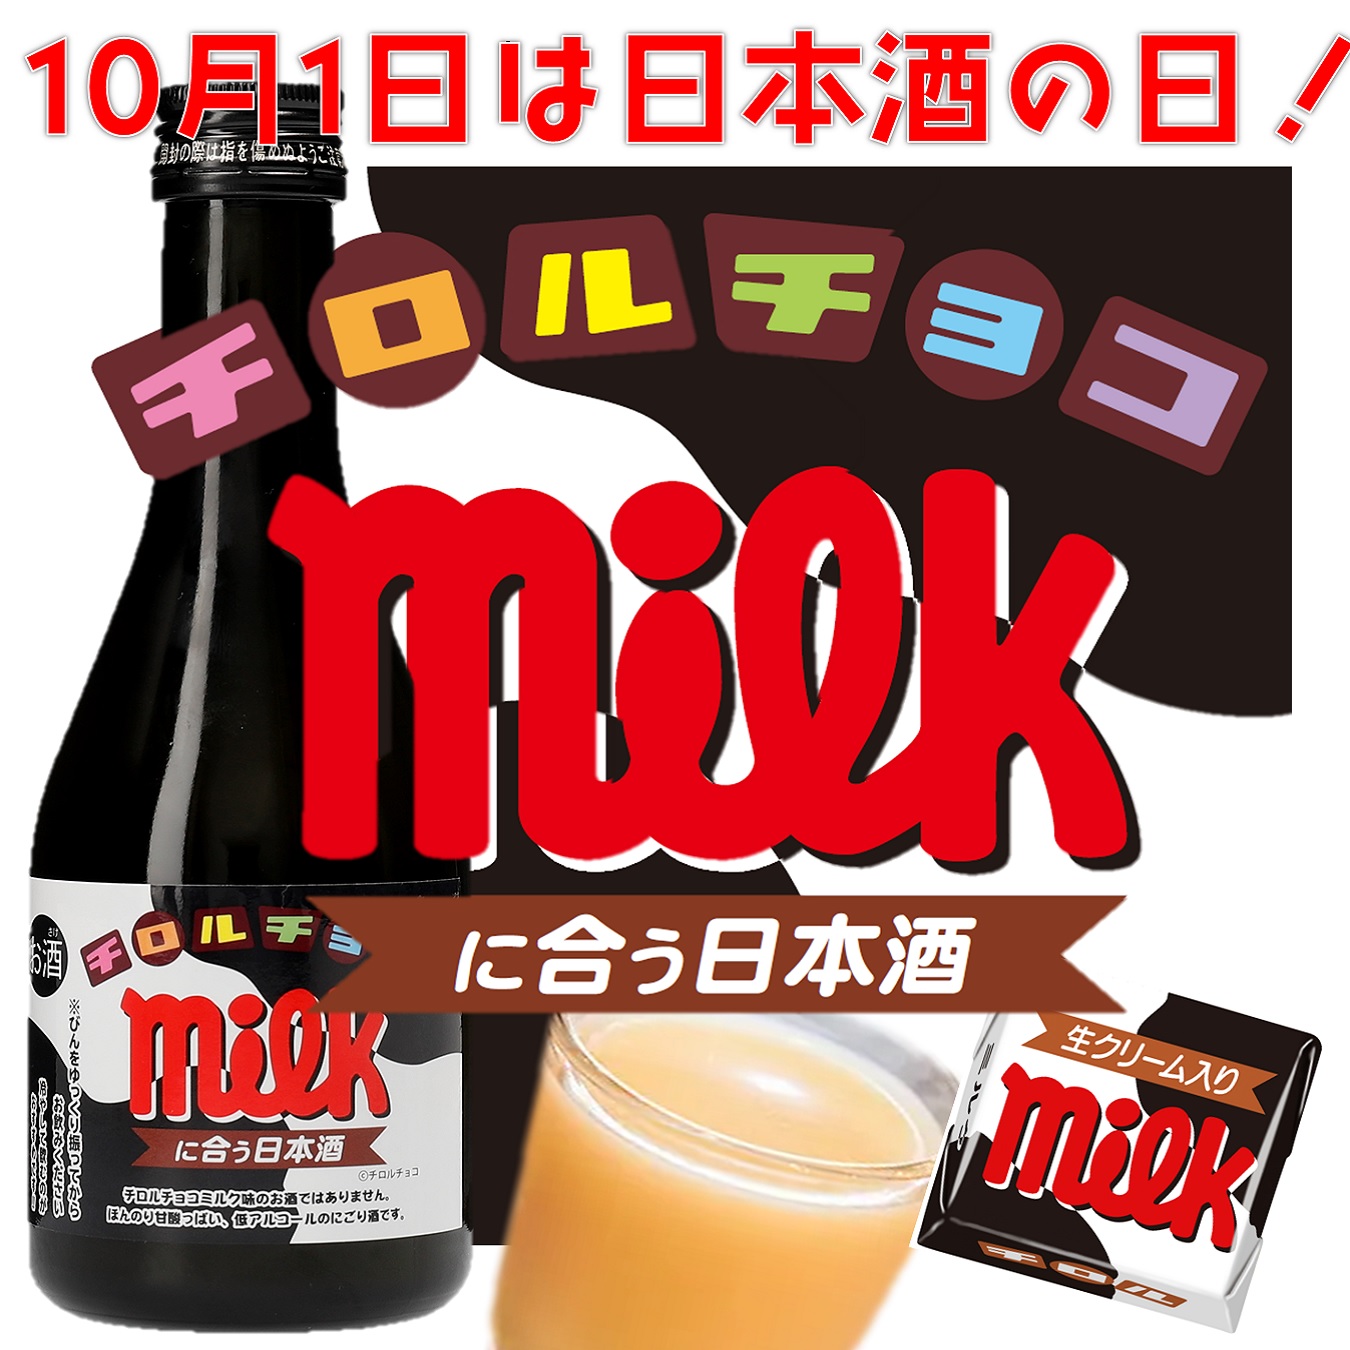 「チロルチョコ〈ミルク〉に合う日本酒」試飲イベント